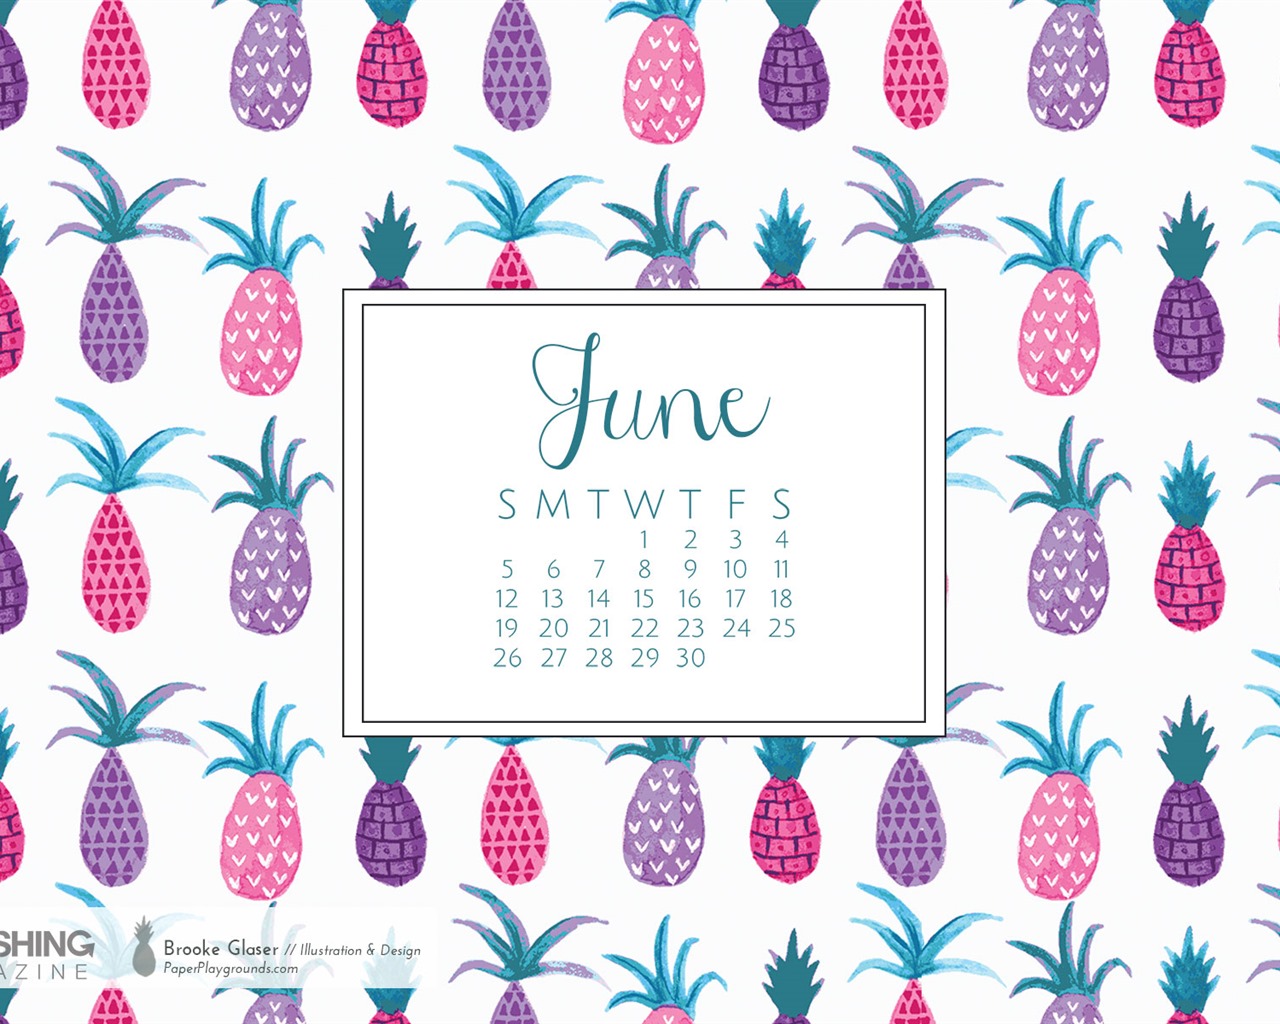 June 2016 calendar wallpaper (2) #15 - 1280x1024